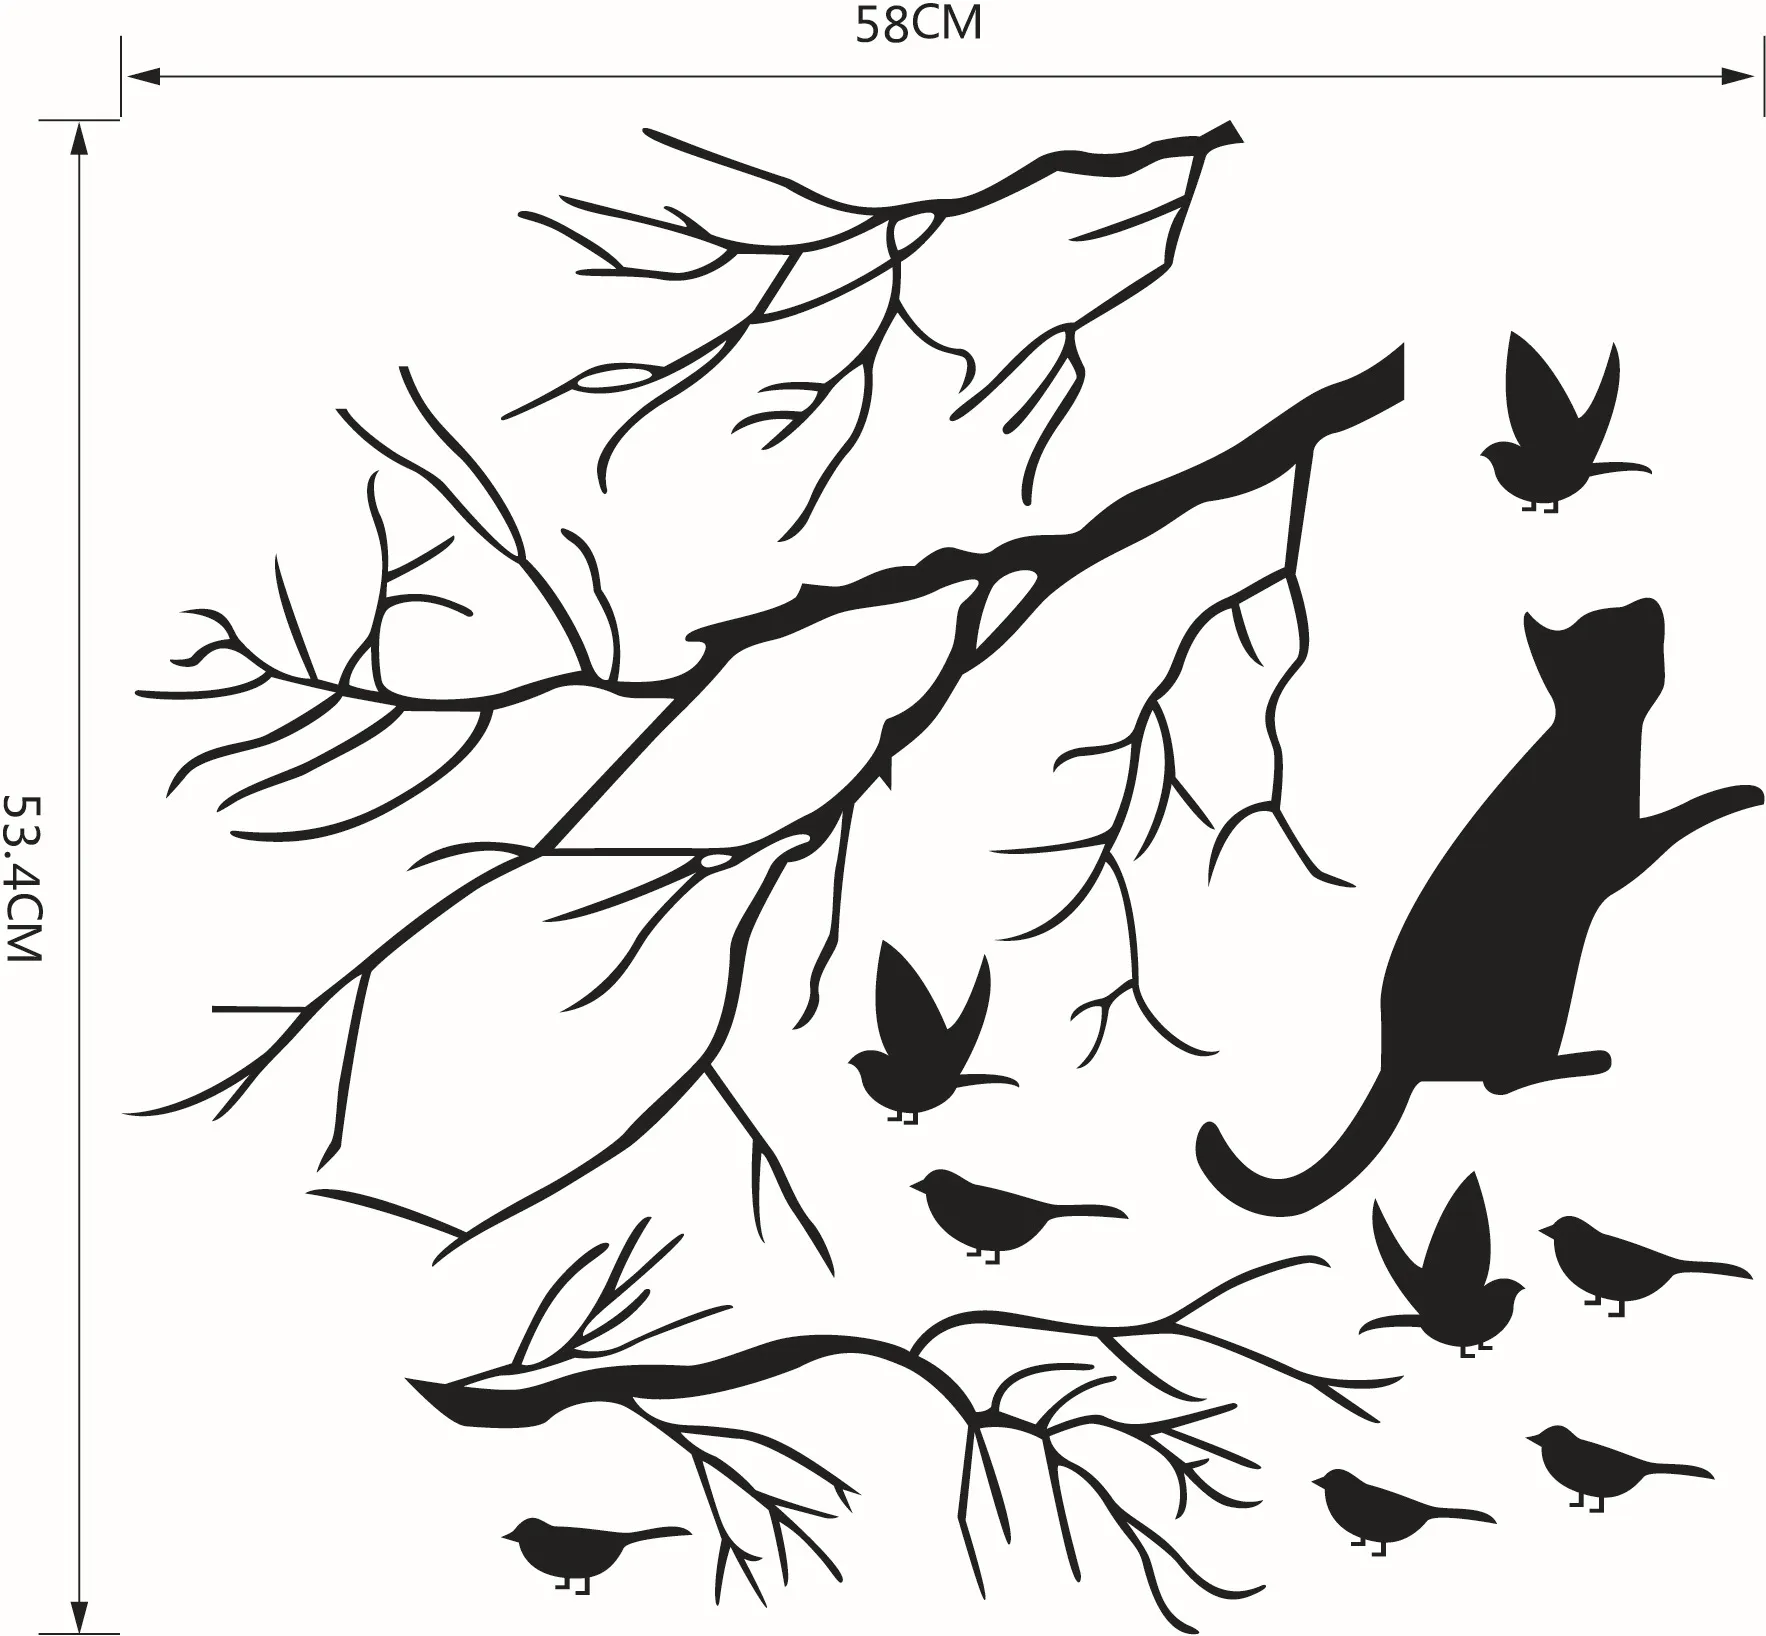 Gato perseguindo os pássaros sob o adesivo de decalque da parede da árvore, pássaro preto no ramo da árvore Arte da parede Mural Janela de vidro Deco9989524